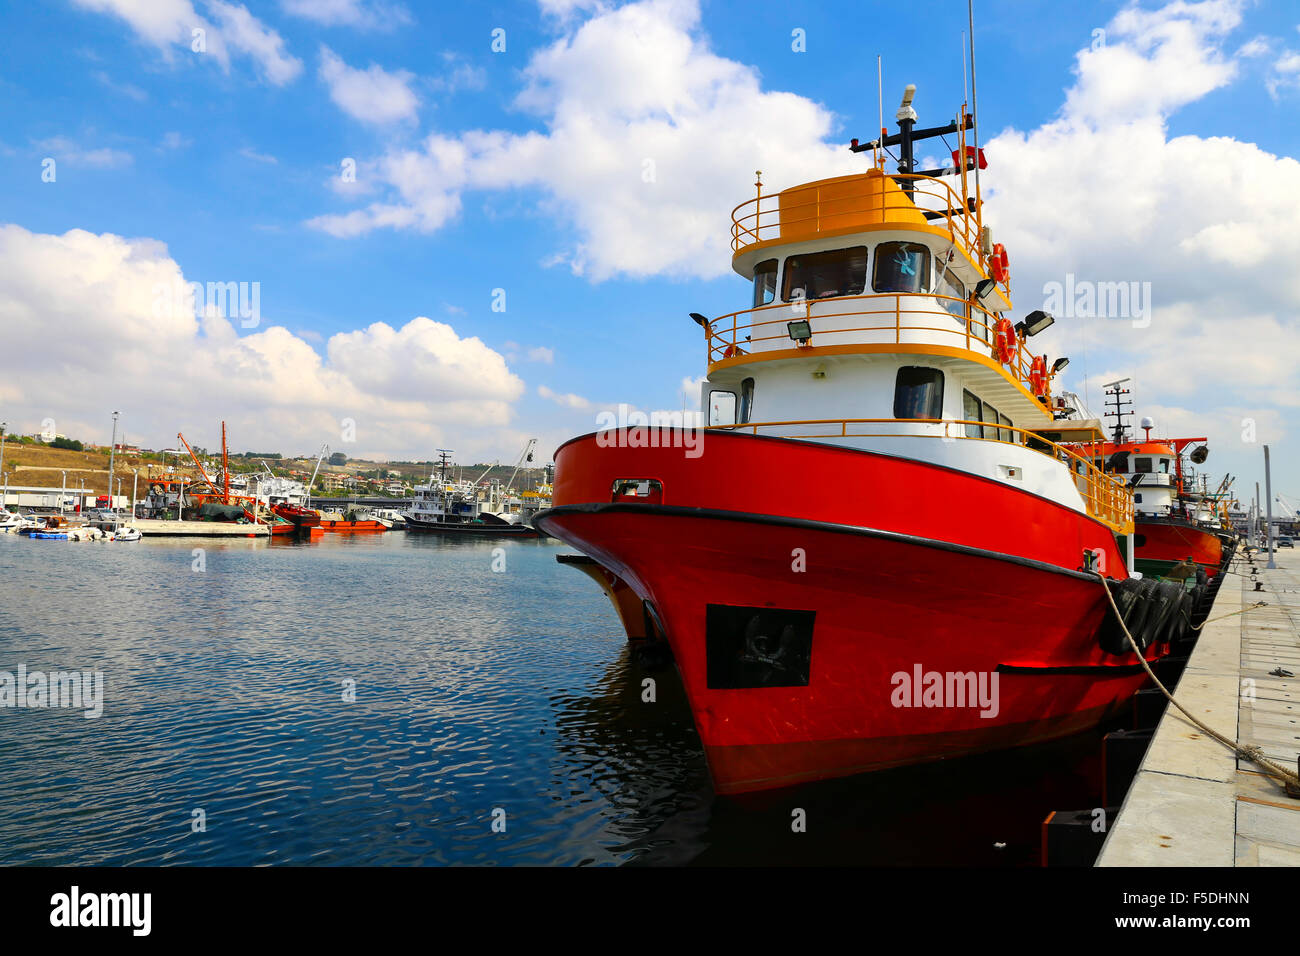 Bateau de pêche de couleur rouge dans un port commercial et un ciel bleu Banque D'Images